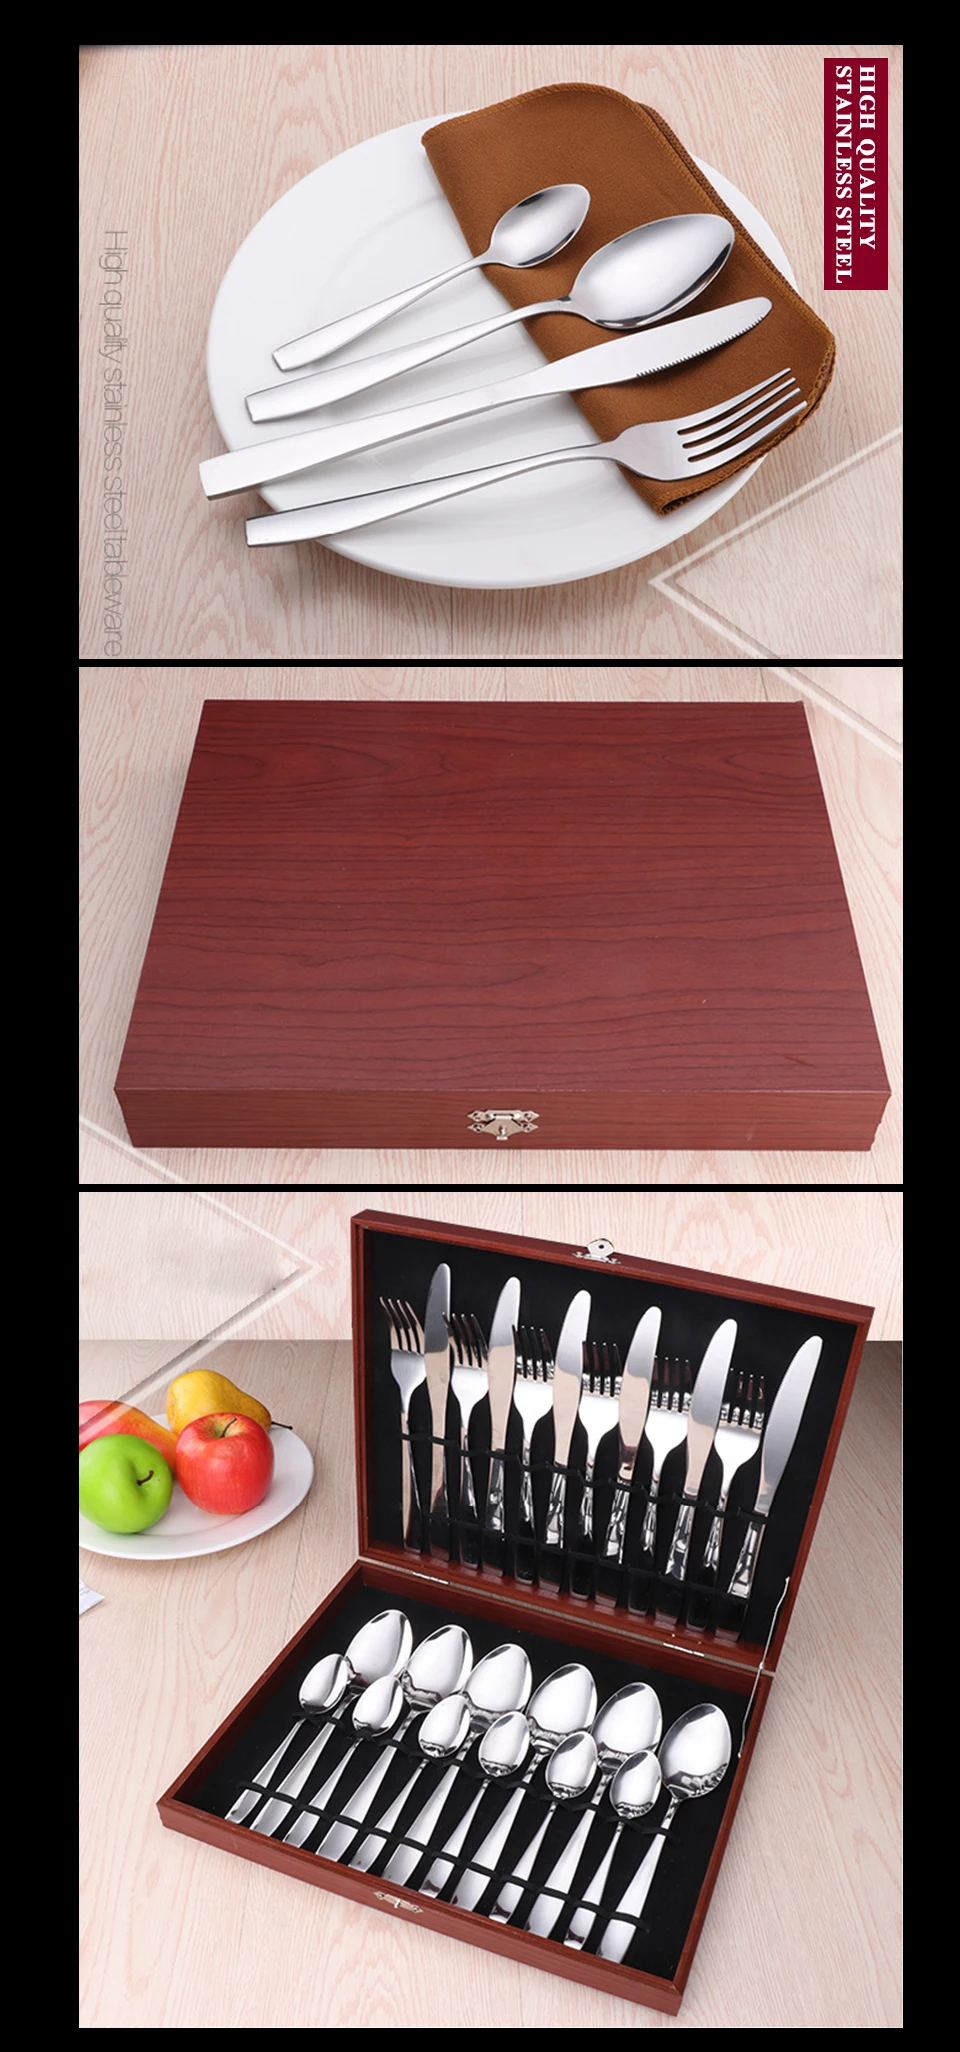 Набор столовых приборов для путешествий из нержавеющей стали, ложка/вилка/наборы ножей, сервировочная посуда, столовая посуда Bestek